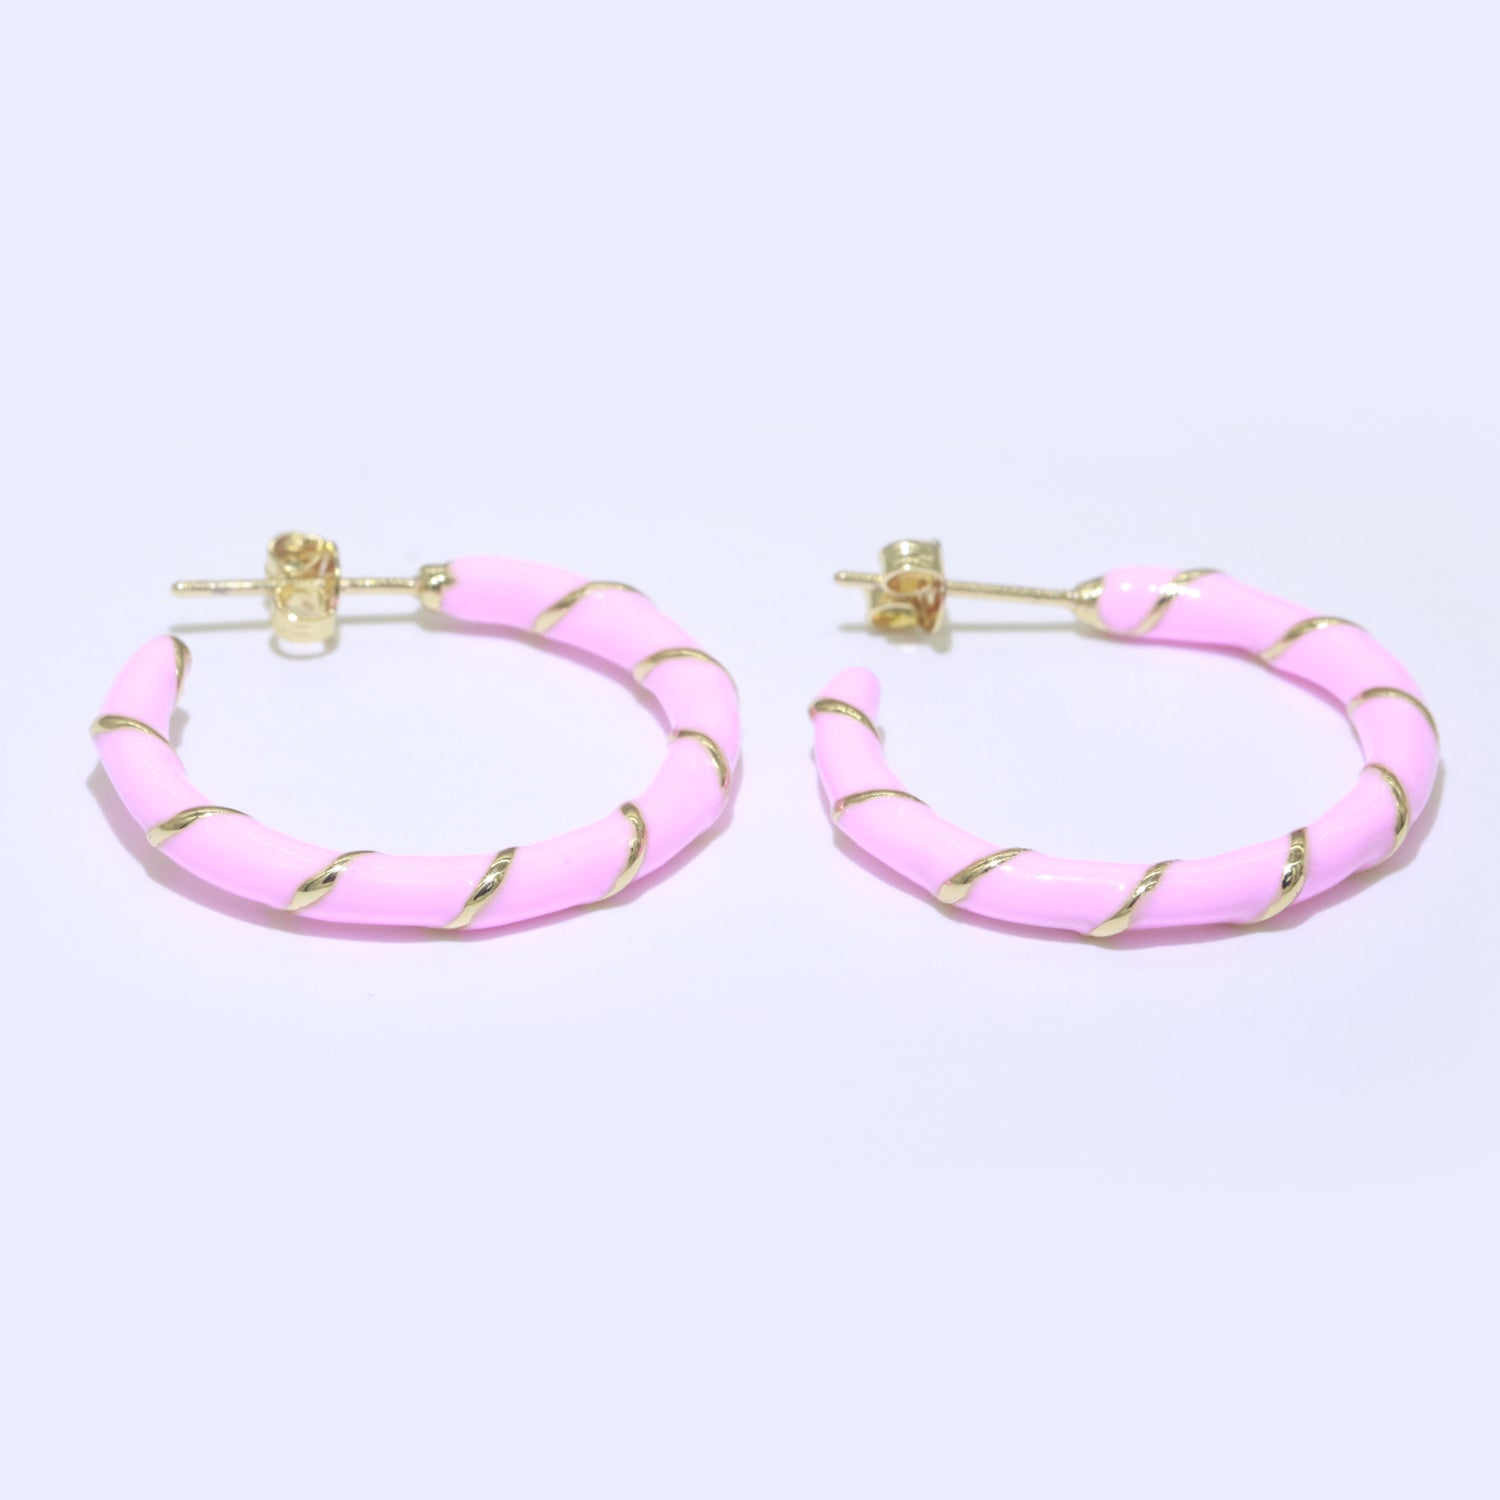 Baby Pink Enamel Hoop Earring with Gold Swirl 26mm Hoop earring Jewelry Gift - DLUXCA